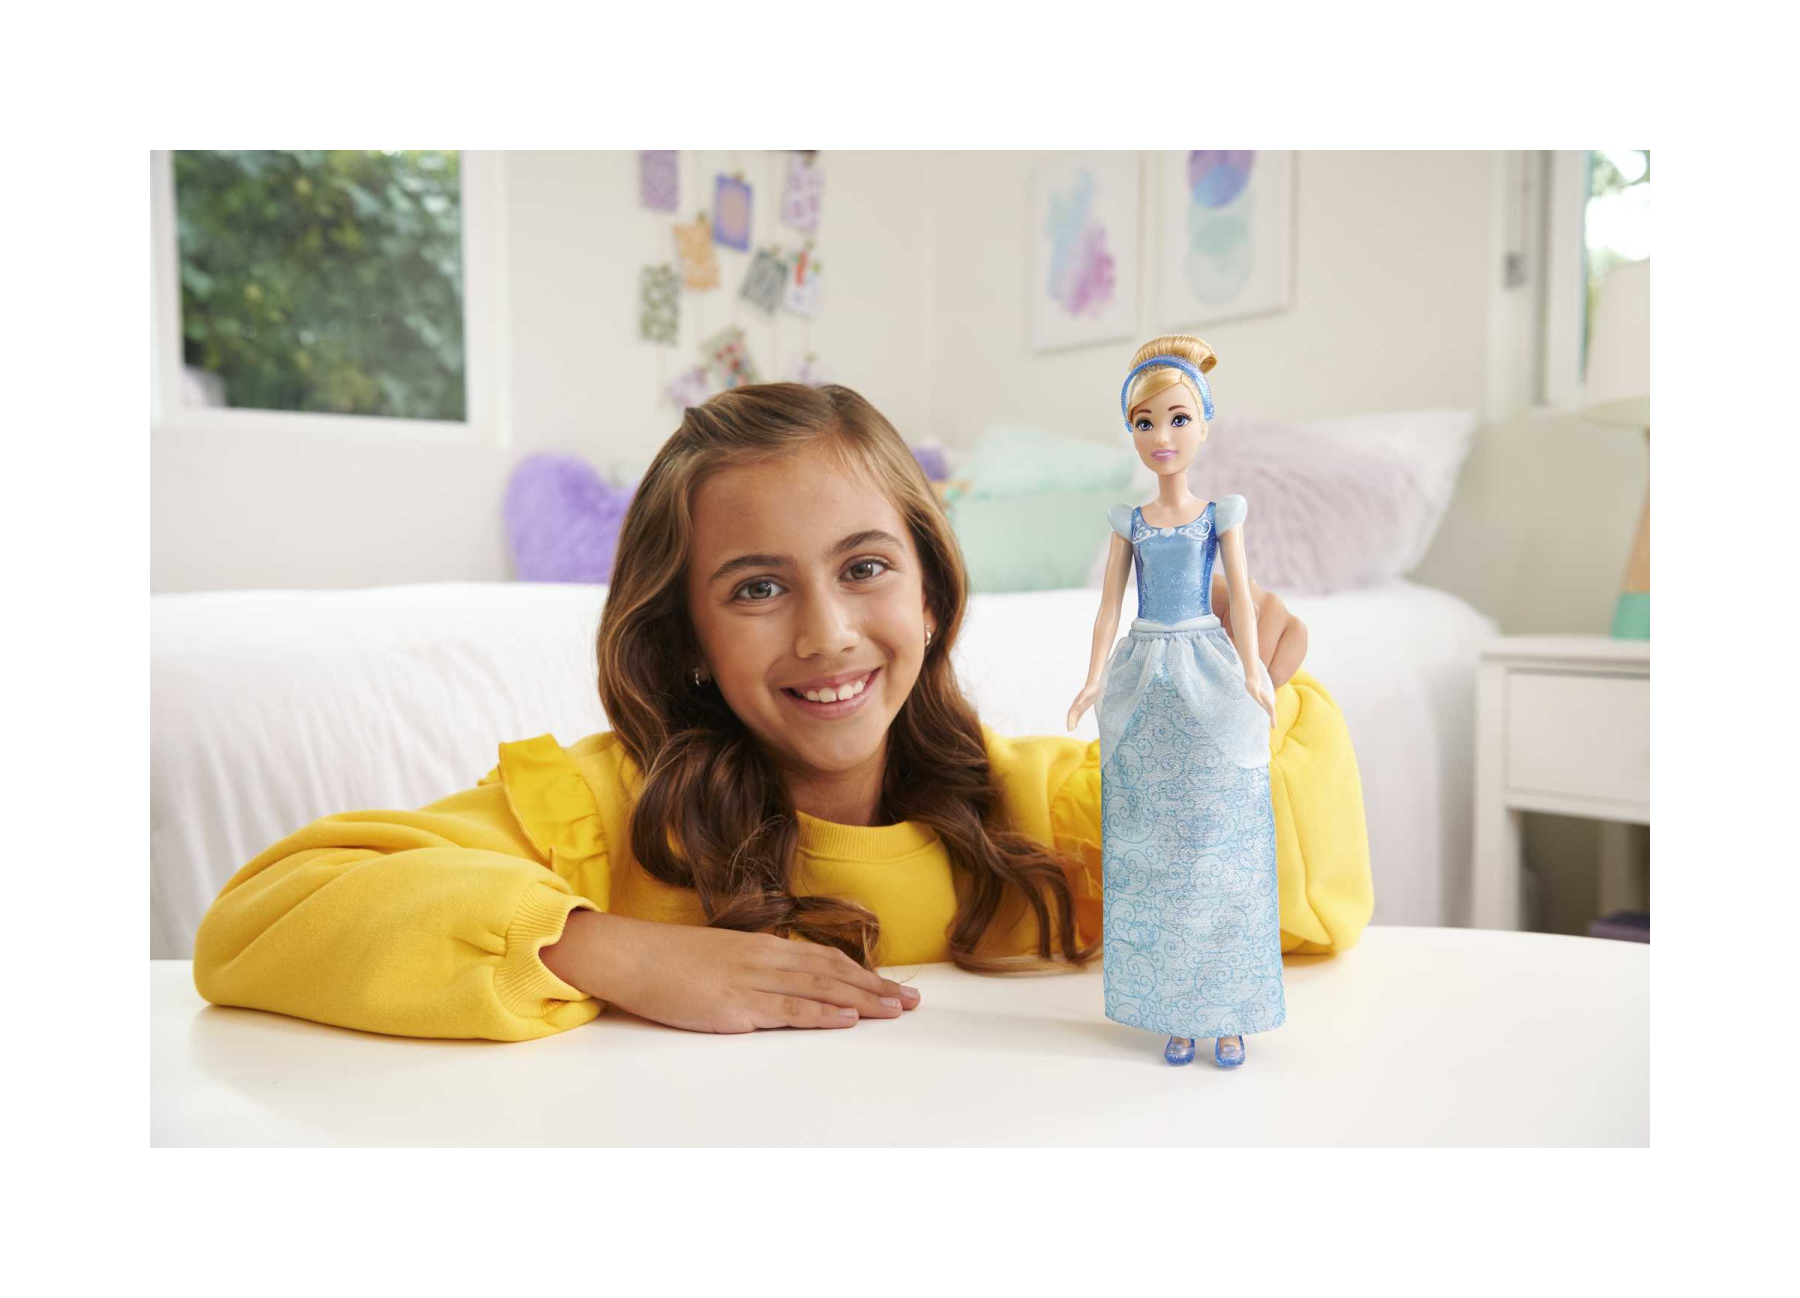 Disney princess - cenerentola bambola snodata, con capi e accessori scintillanti ispirati al film disney, giocattolo per bambini, 3+ anni, hlw06 - DISNEY PRINCESS